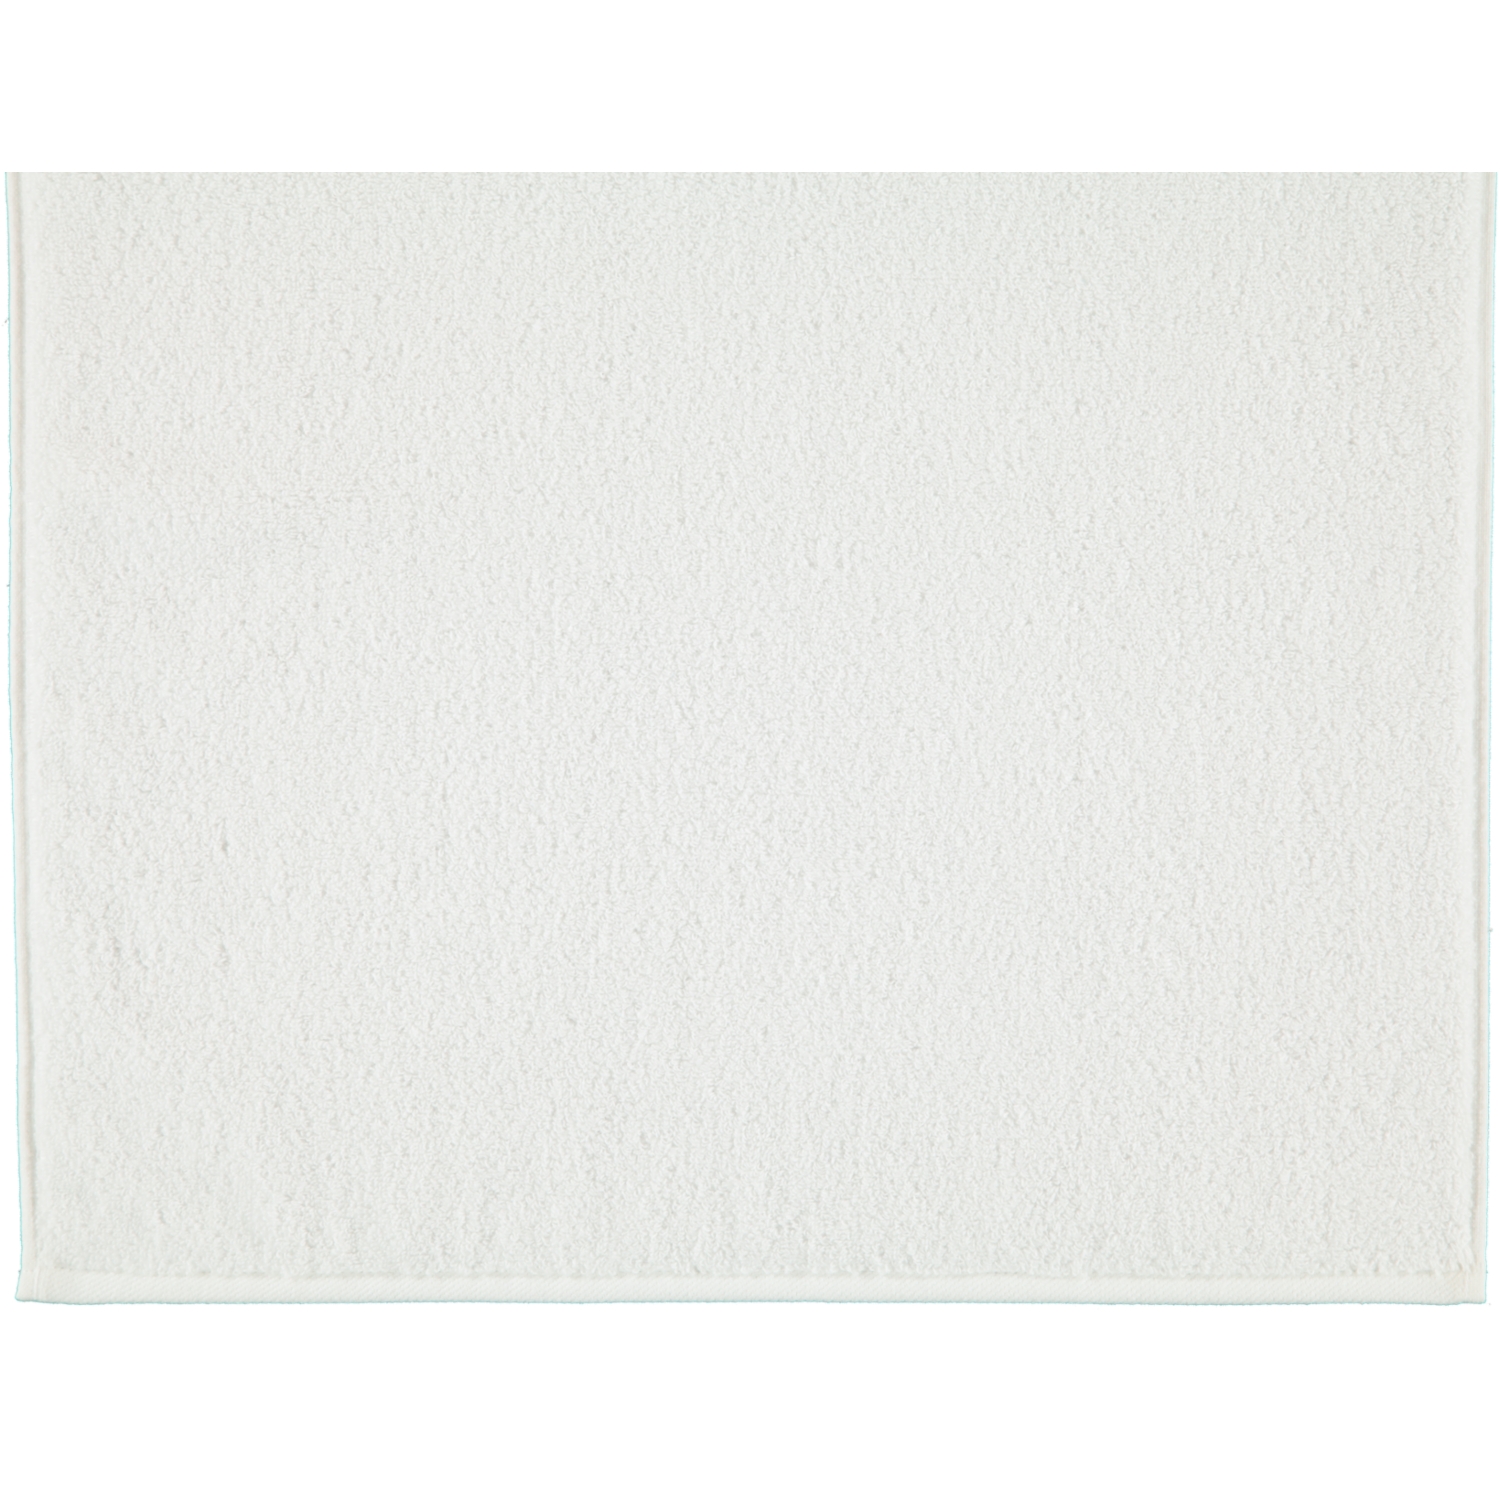 Handtücher | Skin weiß - Farbe: 00 Sensual 9000 Marken | Ross | - Ross Ross